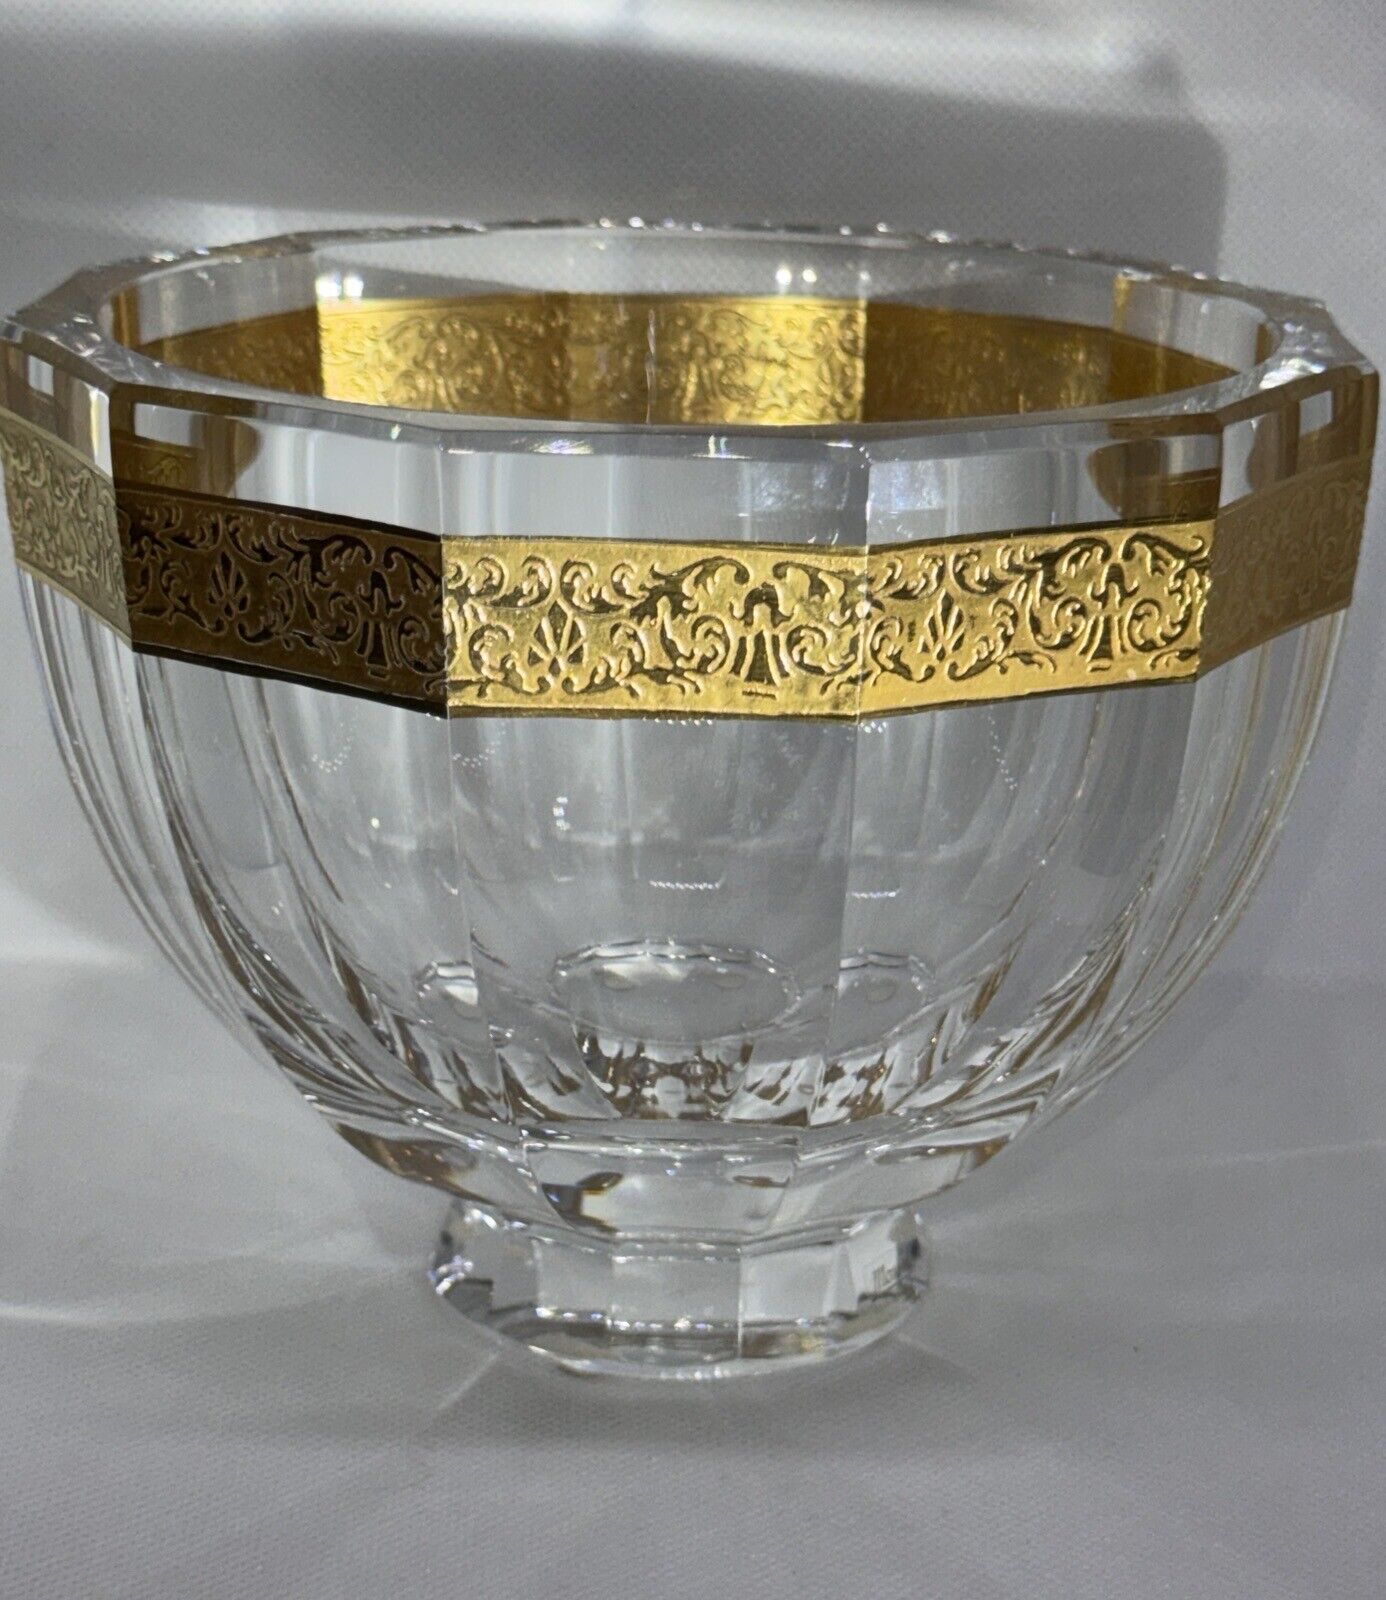 Moser Vela Bowl 24K Gilded Gold Band Crystal Bowl 5“H 6.25“W  Production #506